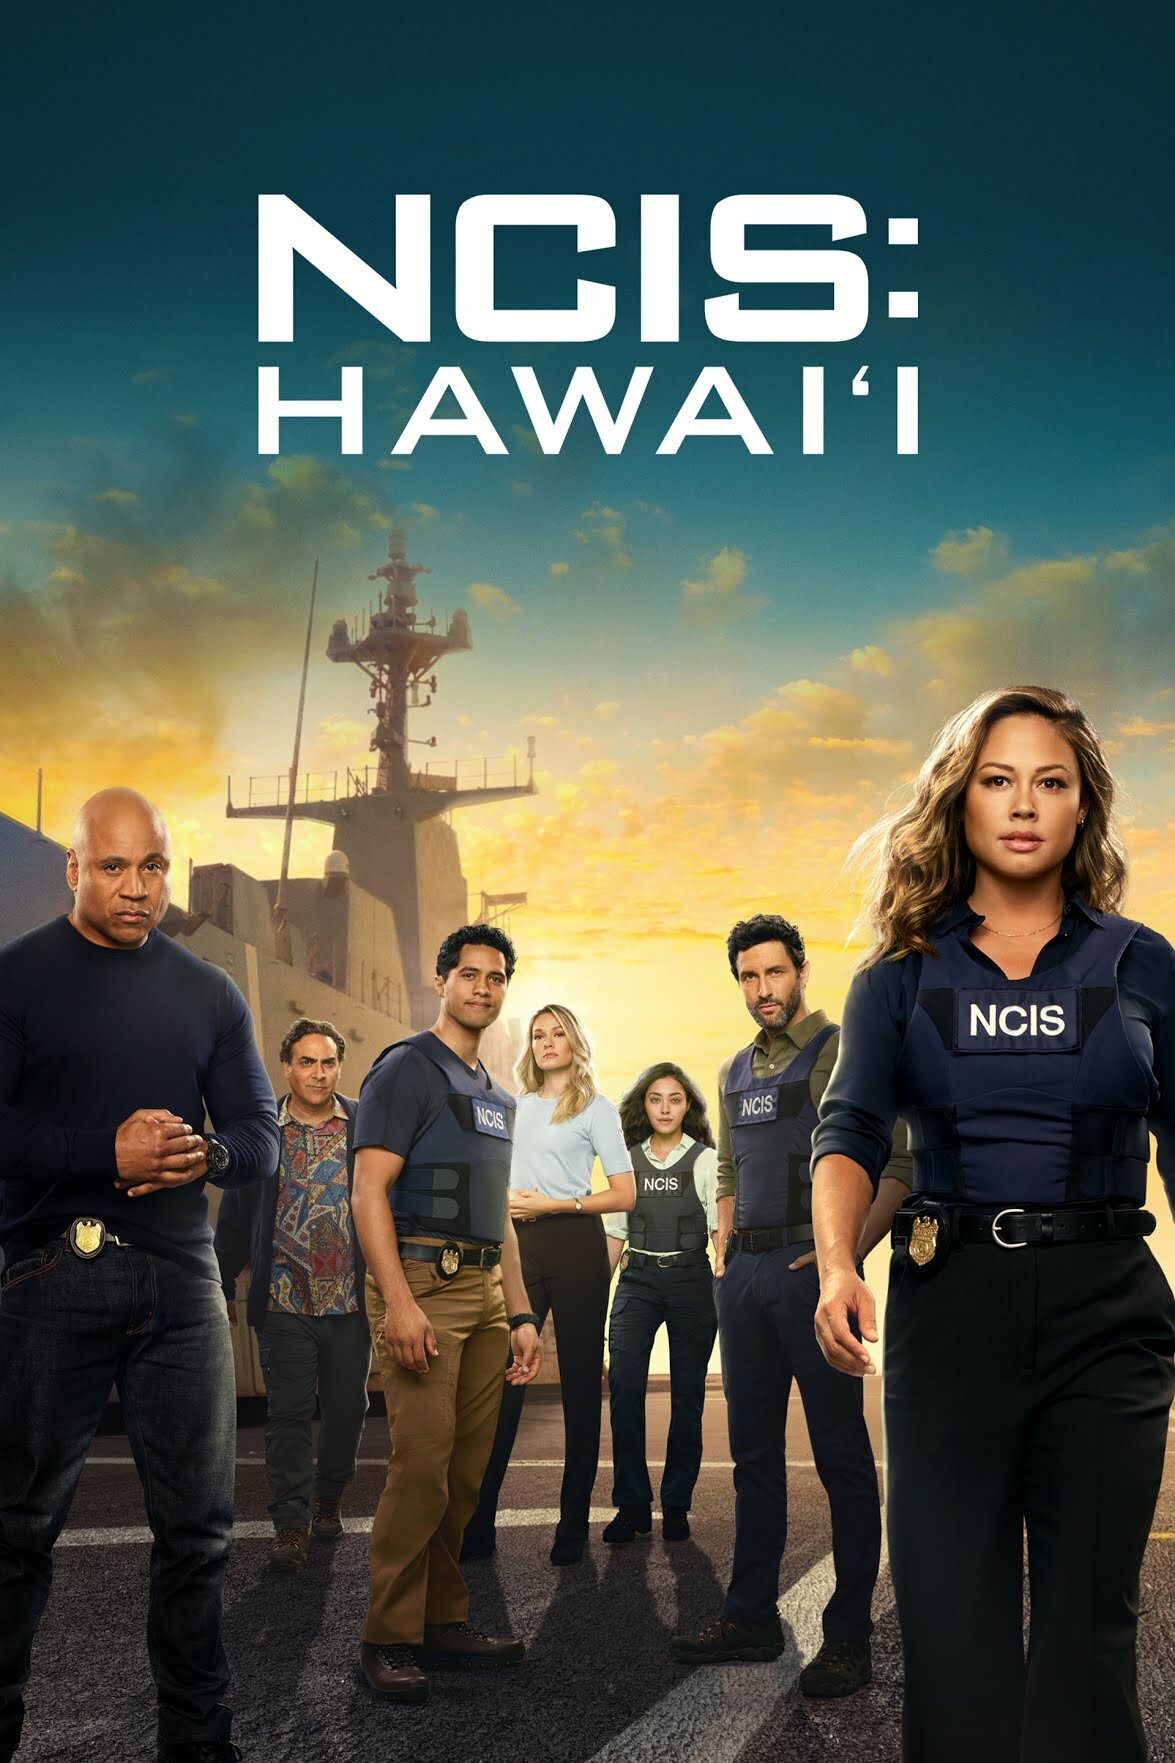 NCIS Hawaii S03E10 720p HDTV x264-SYNCOPY